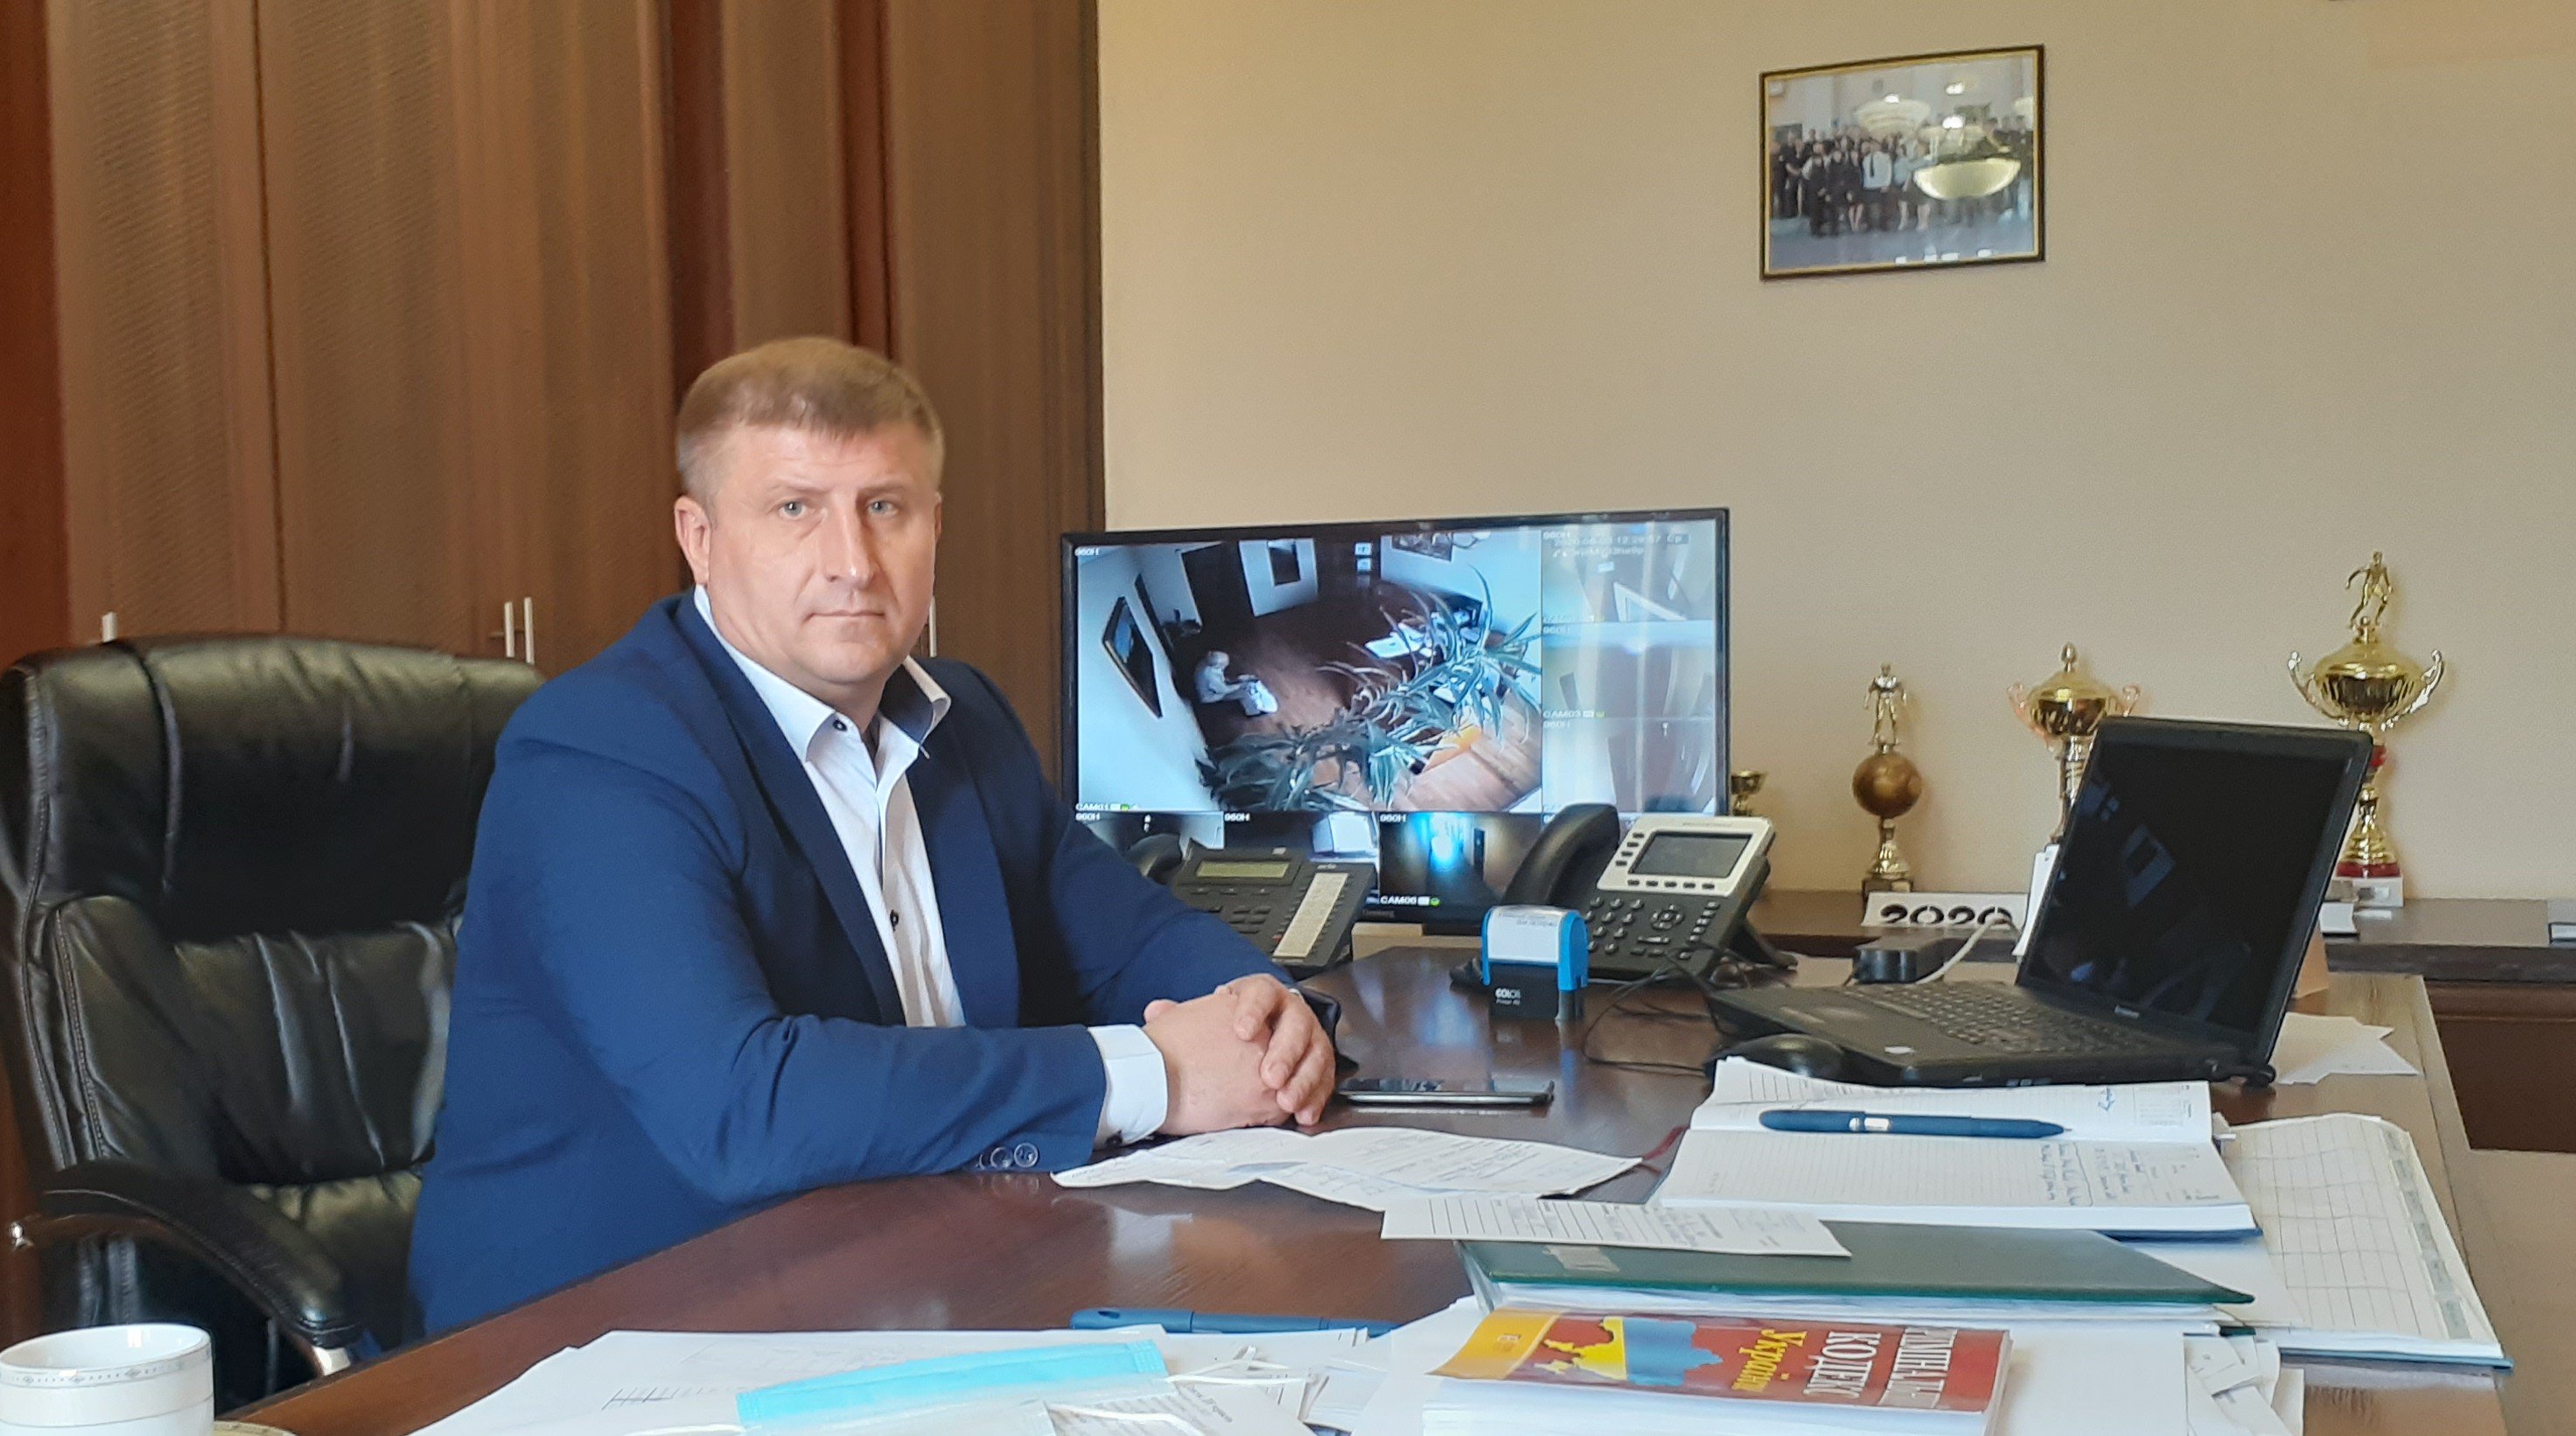 Олег Петренко руководит Броварским отделением полиции с 11 февраля 2020